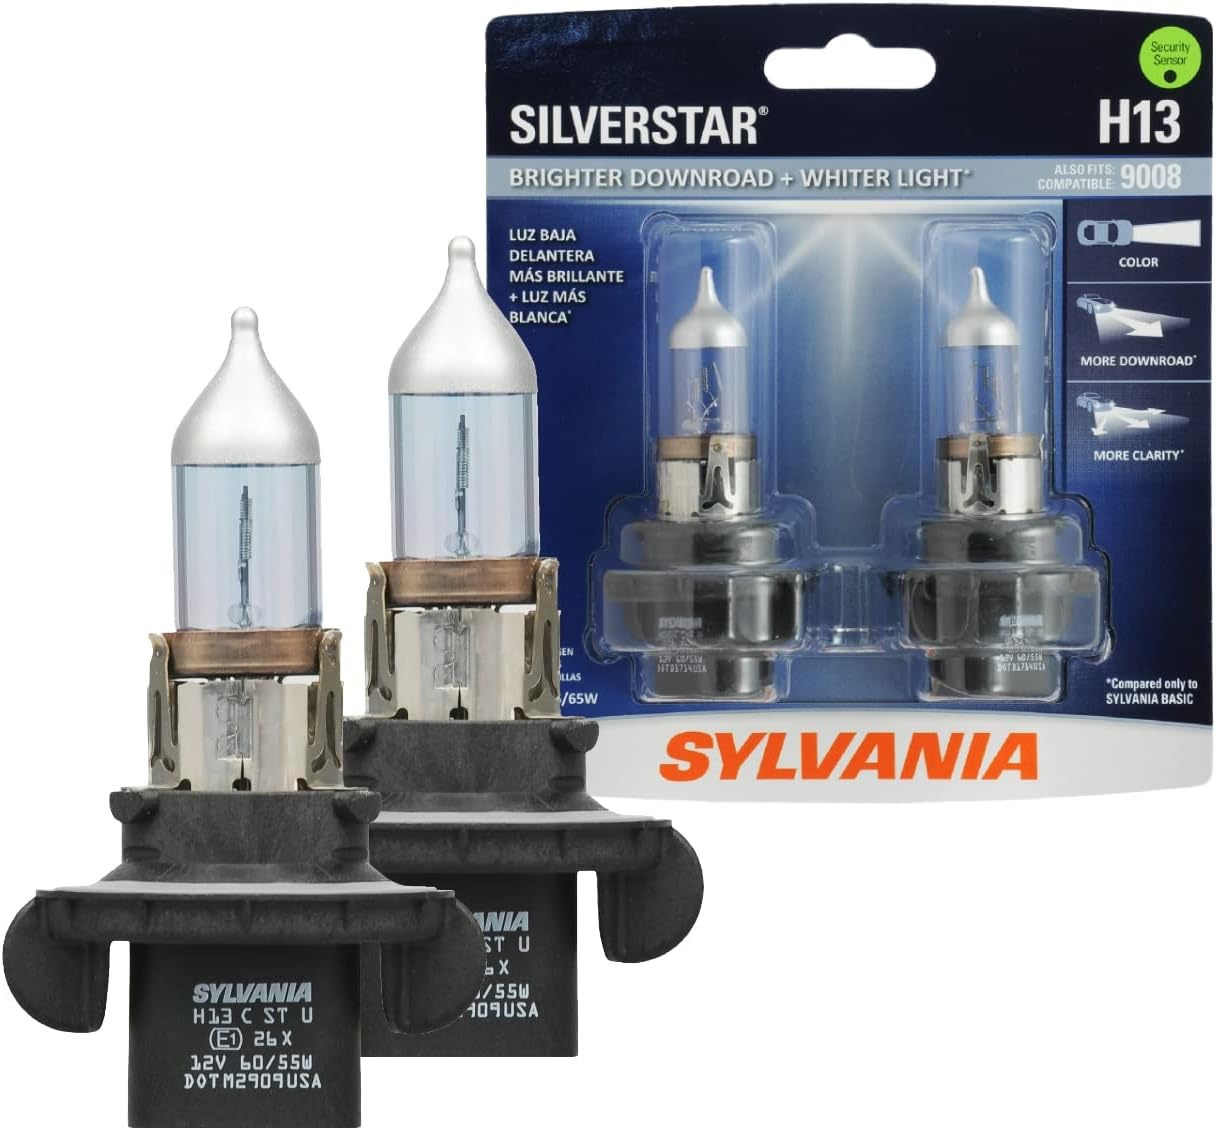 SYLVANIA H13 SilverStar High Performance Halogen Headlight Bulb, (Contains 2 Bulbs)